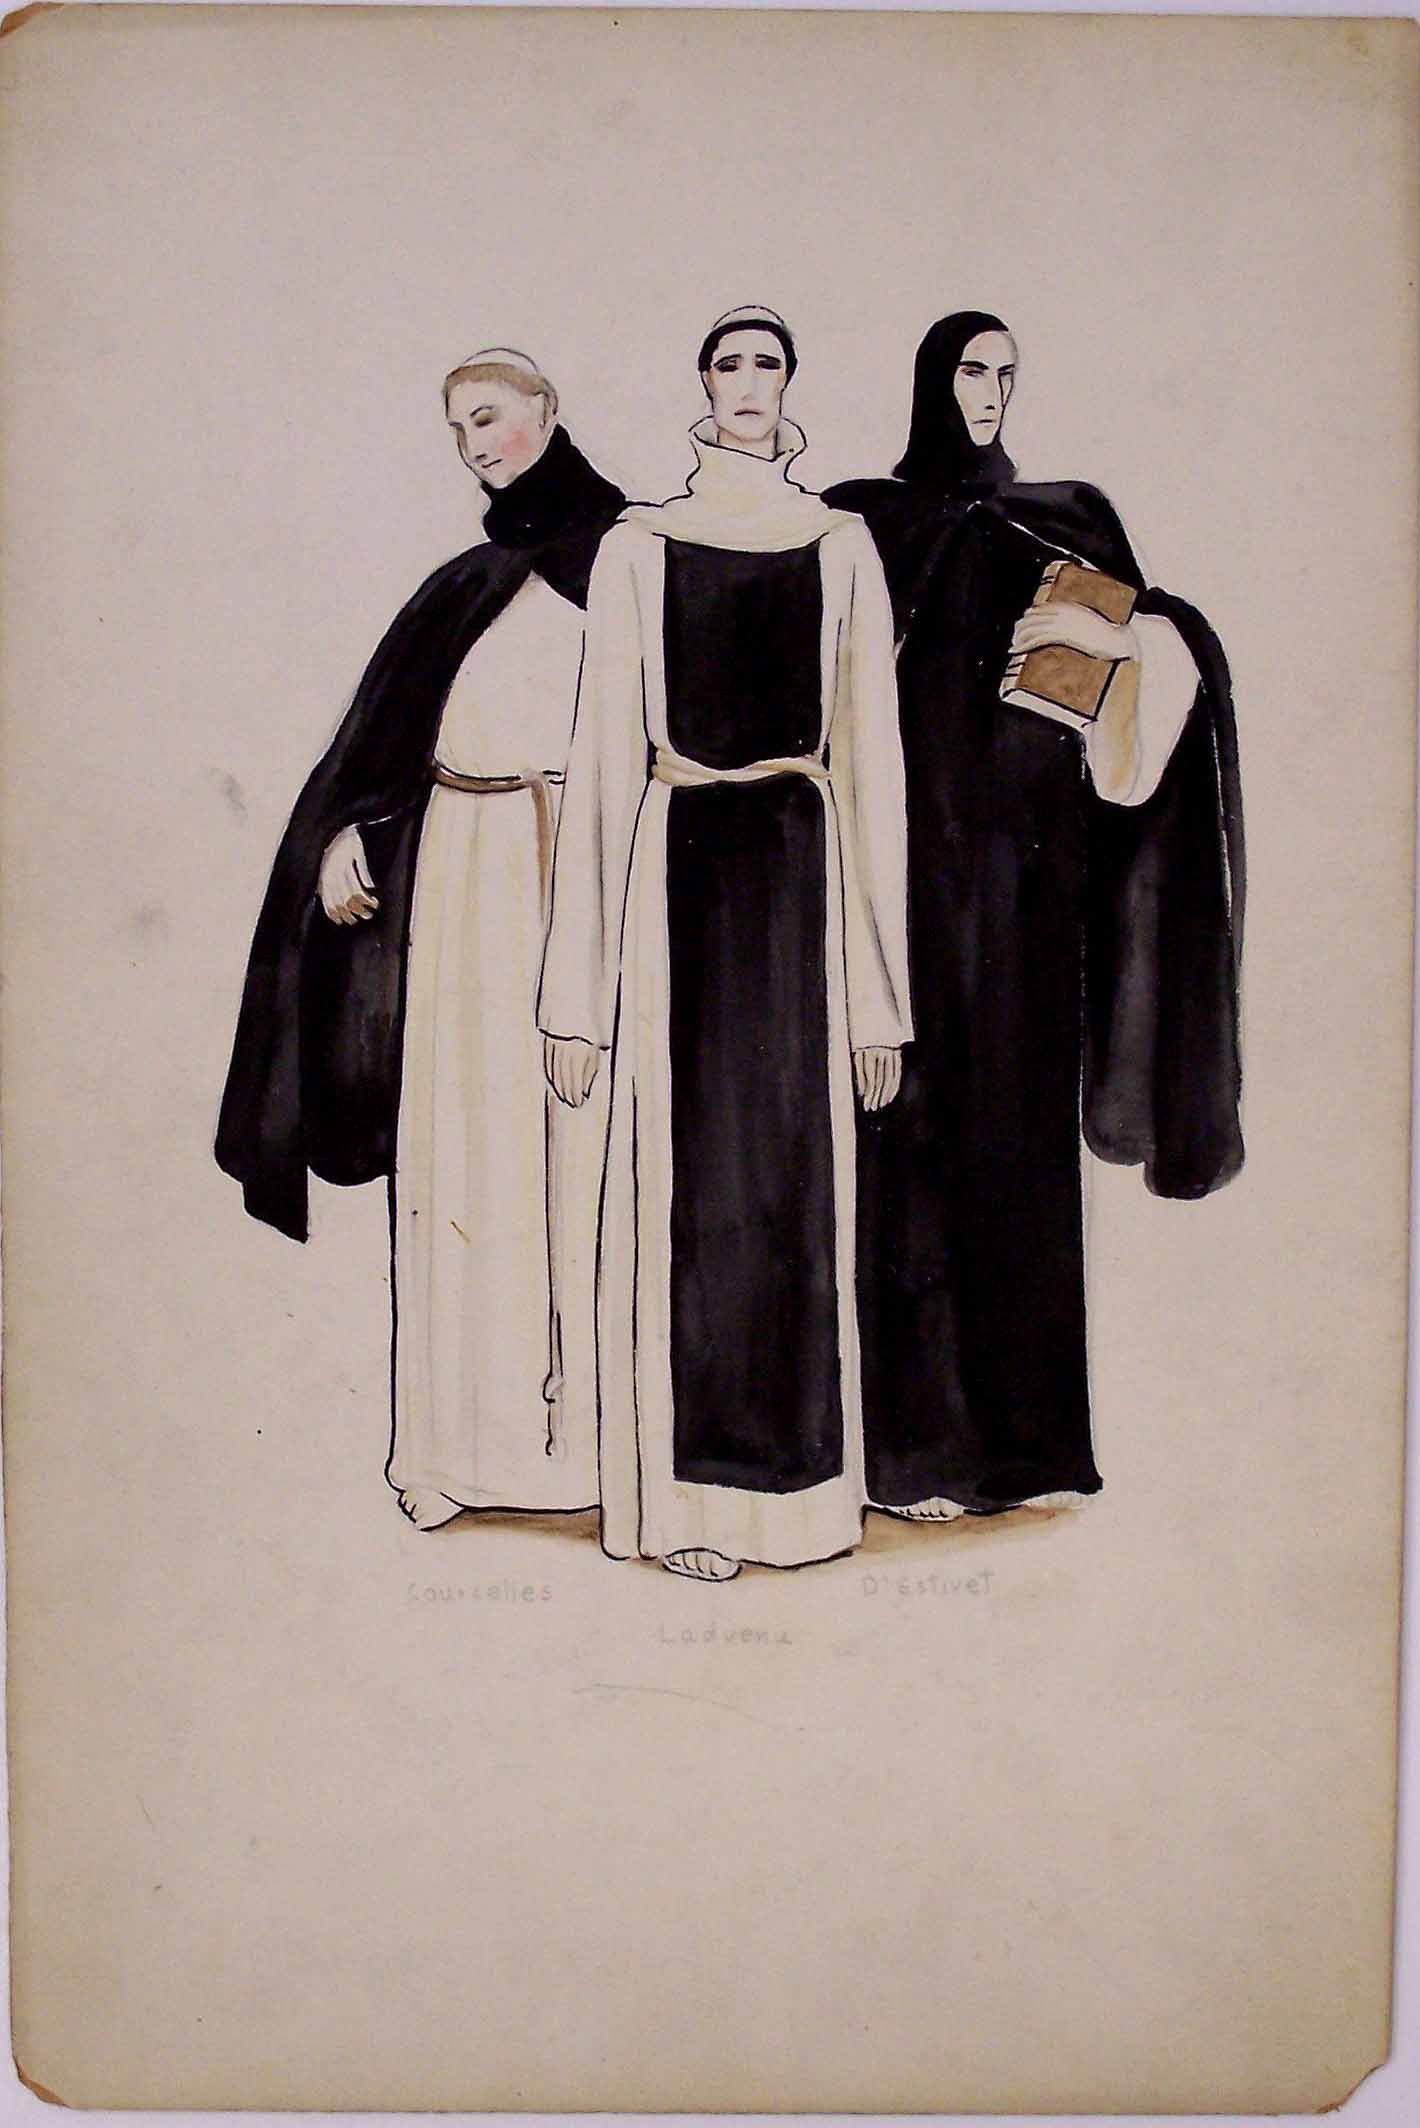 Whittaker costume design for Saint Joan